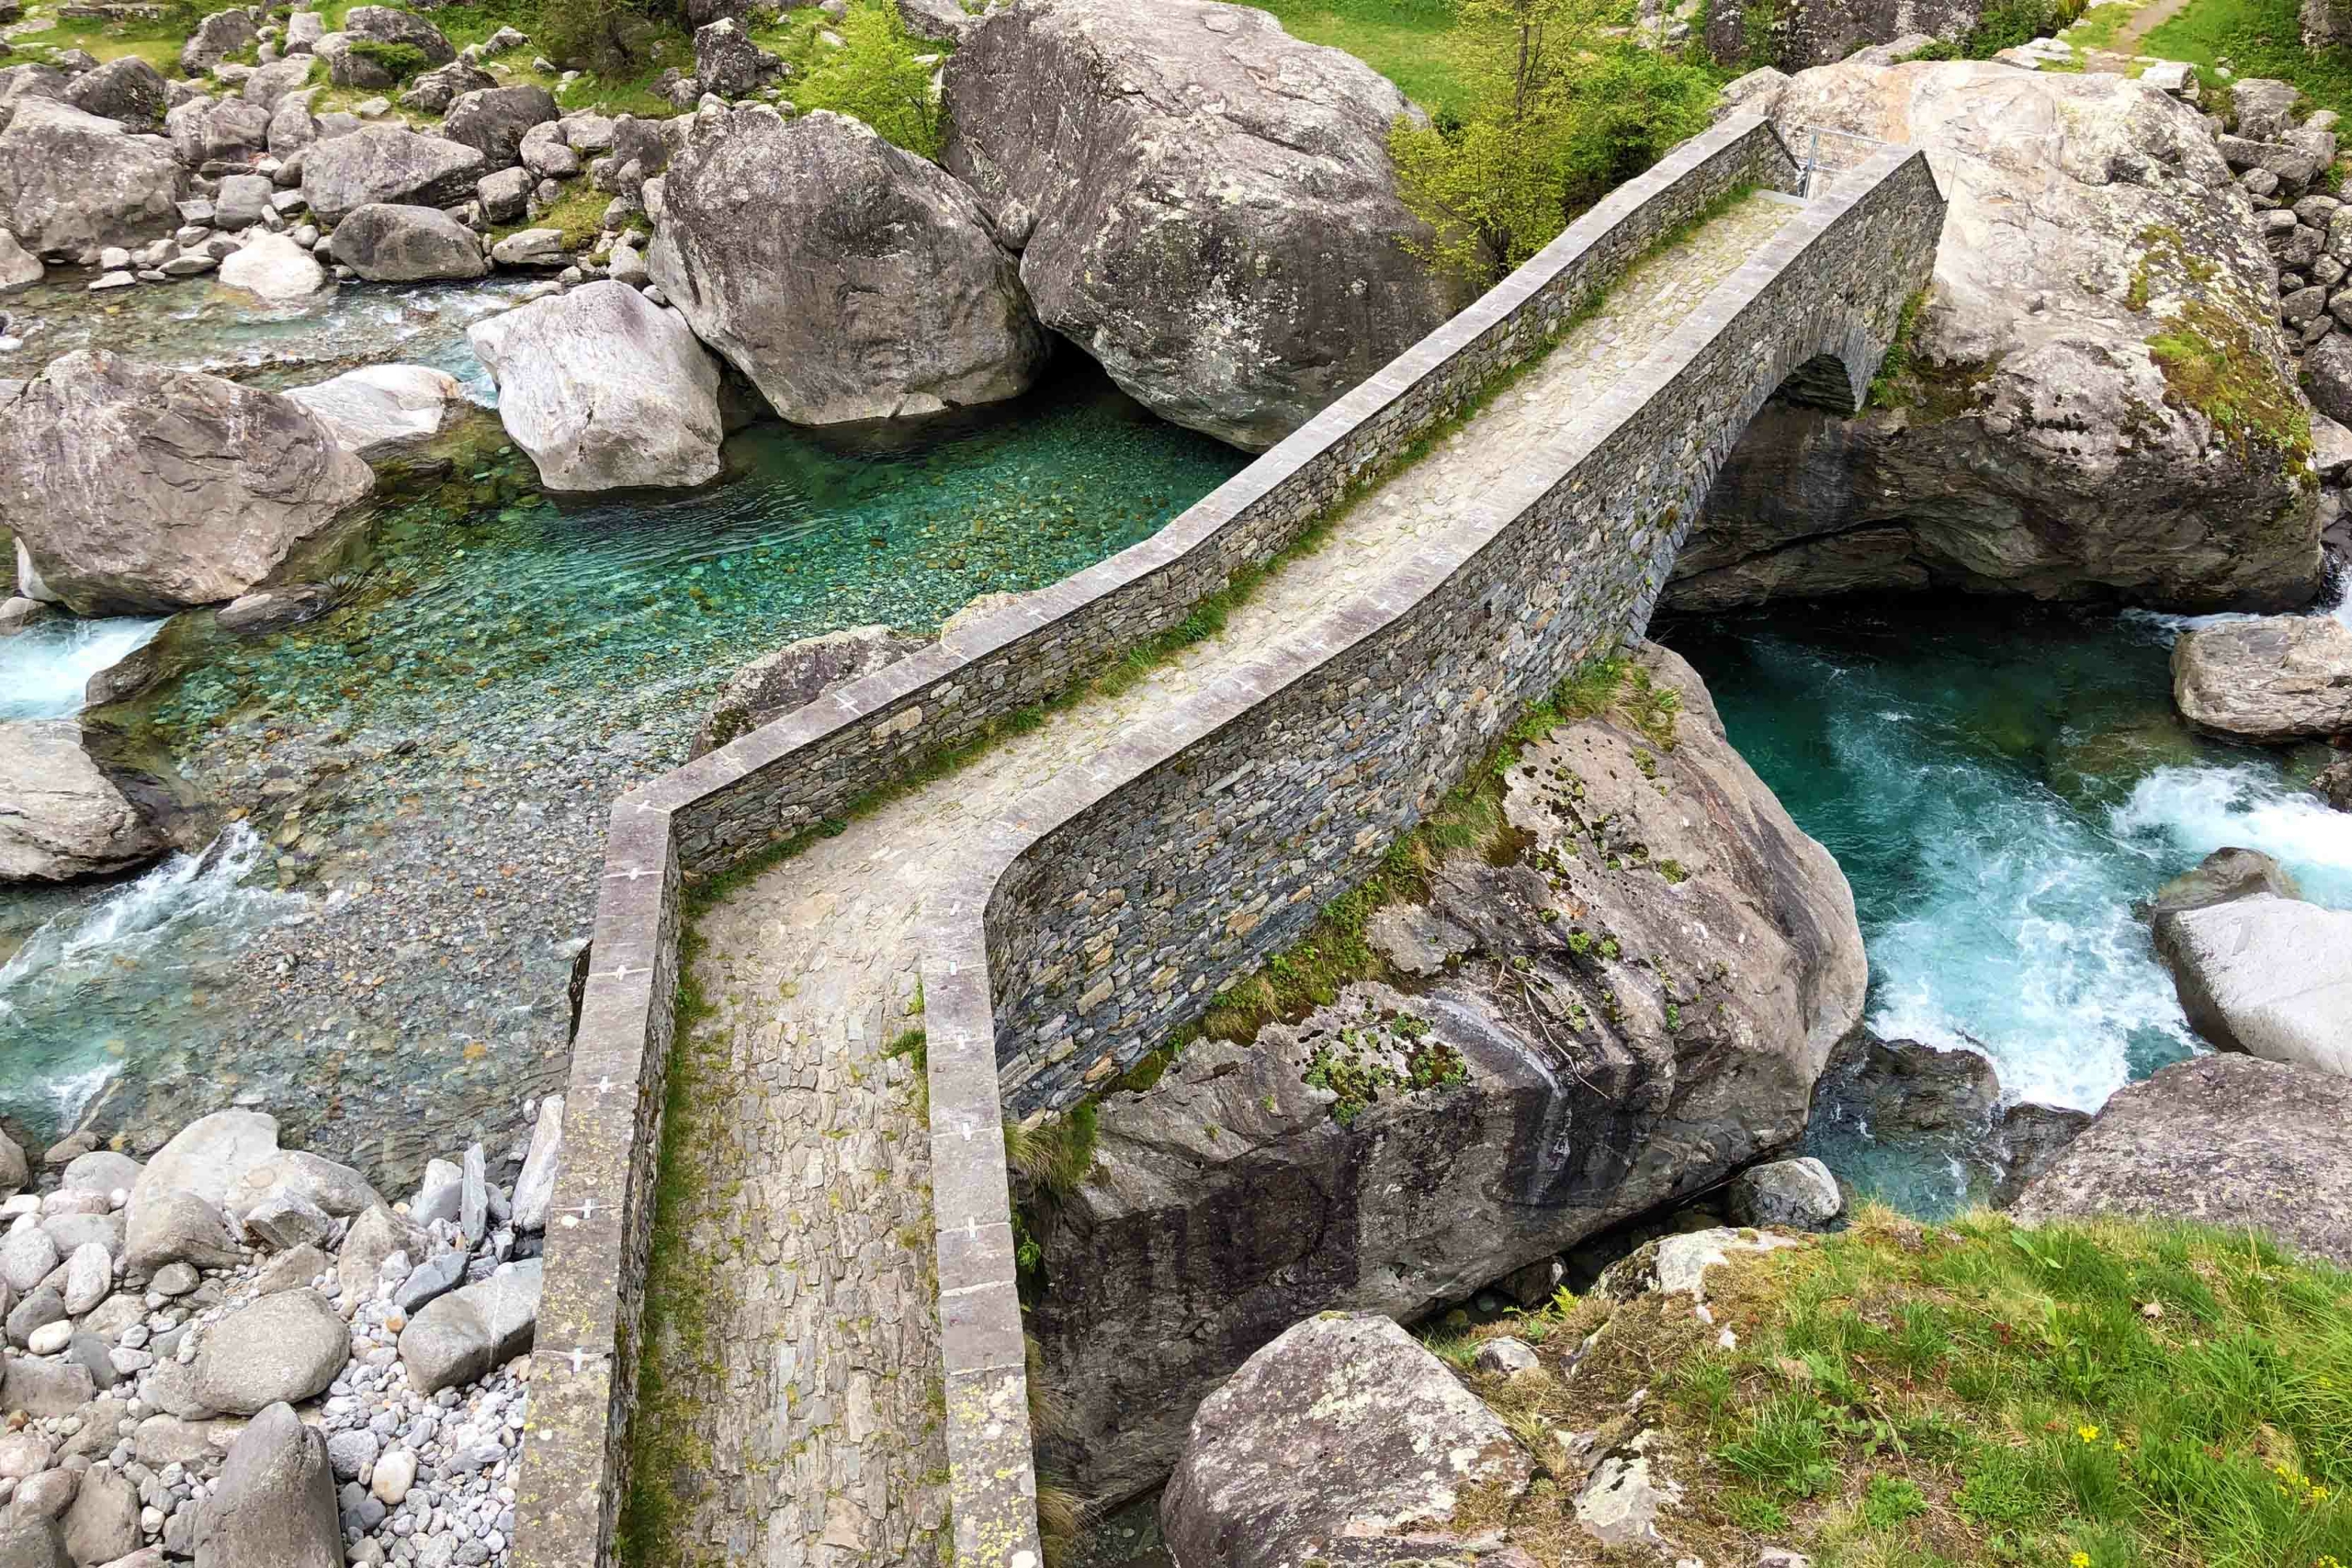 Cây cầu bằng đá. (Ảnh: Mario Krpan/Shutterstock)